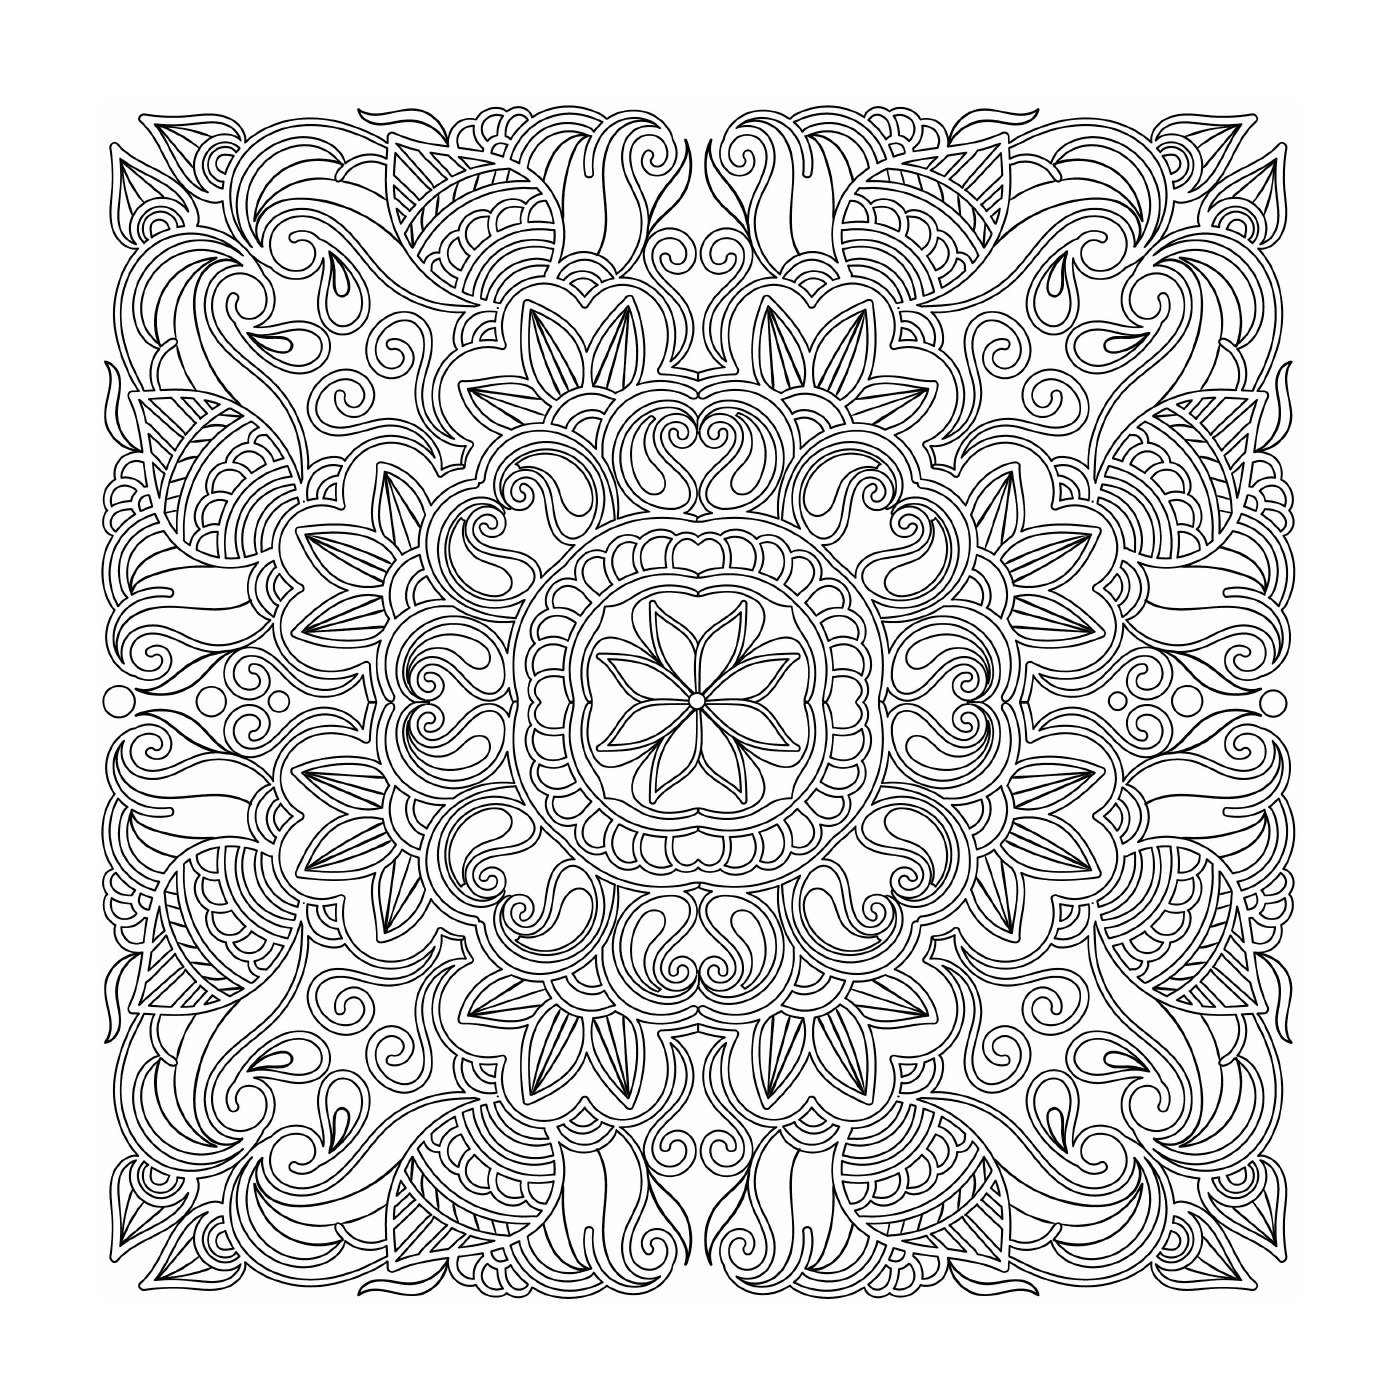  Mandala - Doodle complex 